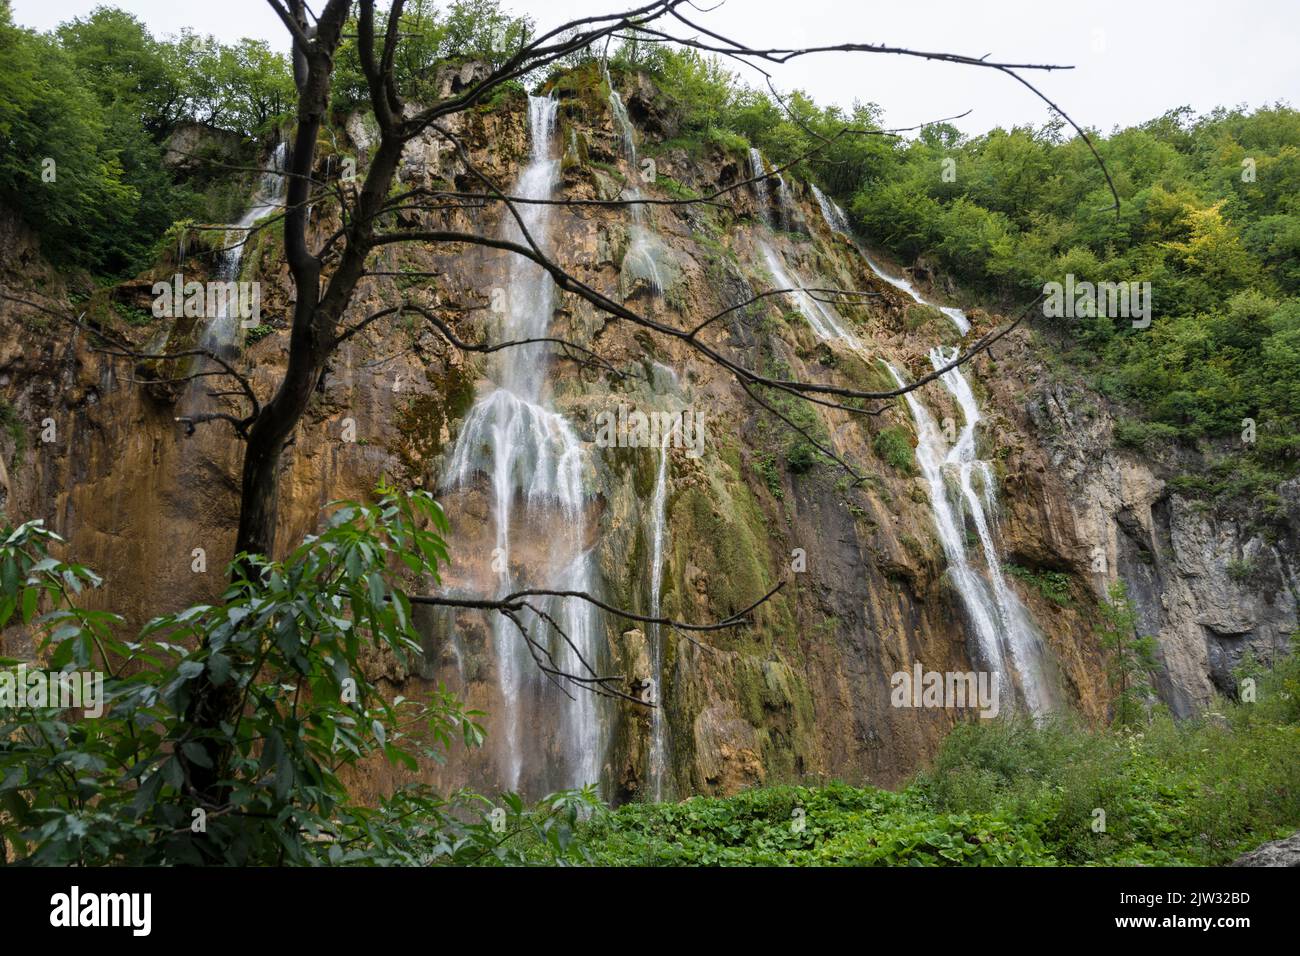 Agua que cae de las rocas de una de las muchas cascadas en el Parque Nacional de los Lagos de Plitvice, Croacia, Europa. Foto de stock